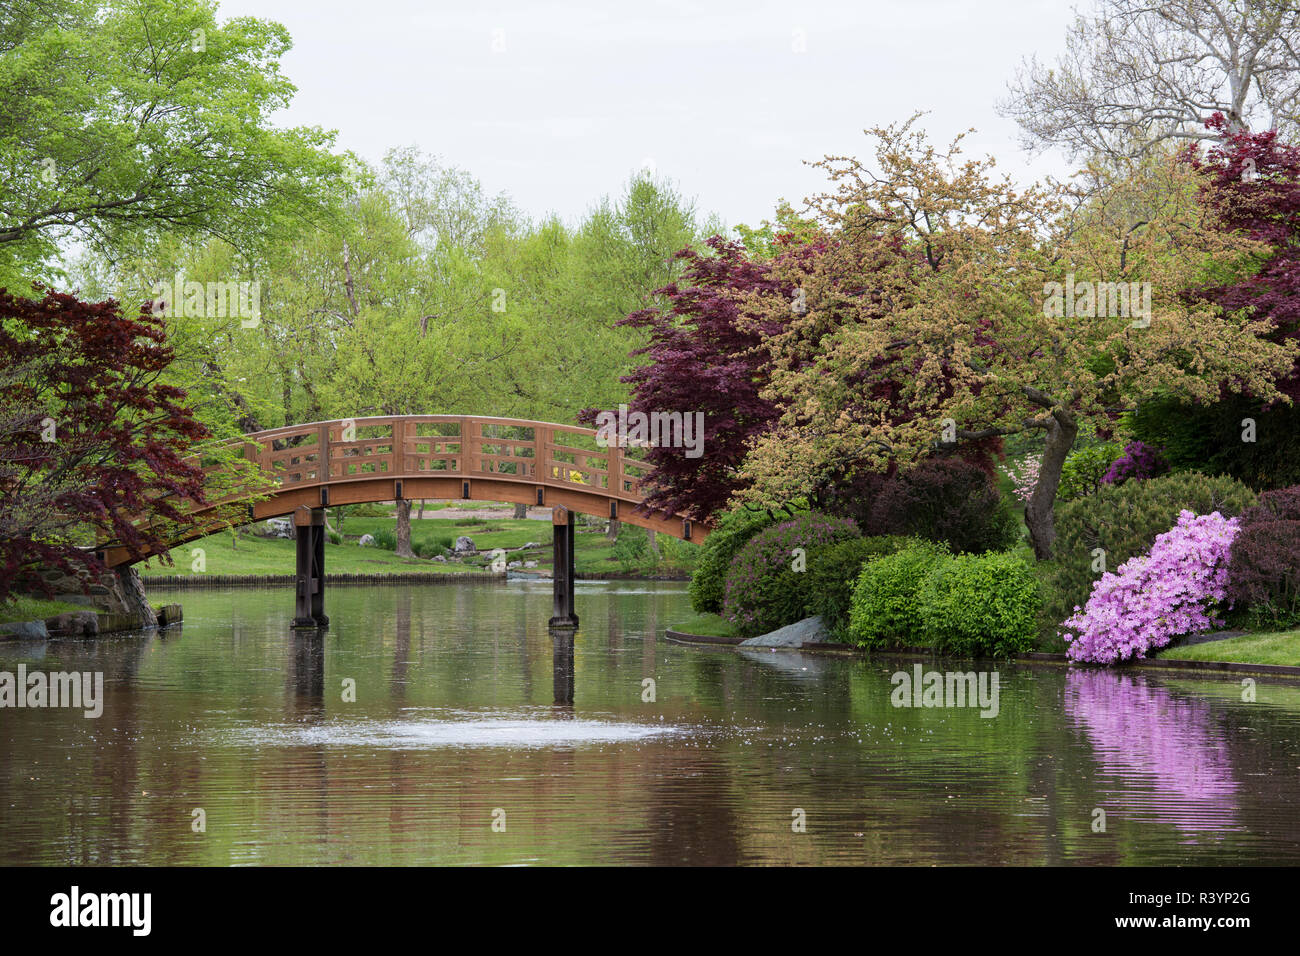 Jardin japonais au printemps, Missouri Botanical Garden, St Louis, Missouri Banque D'Images